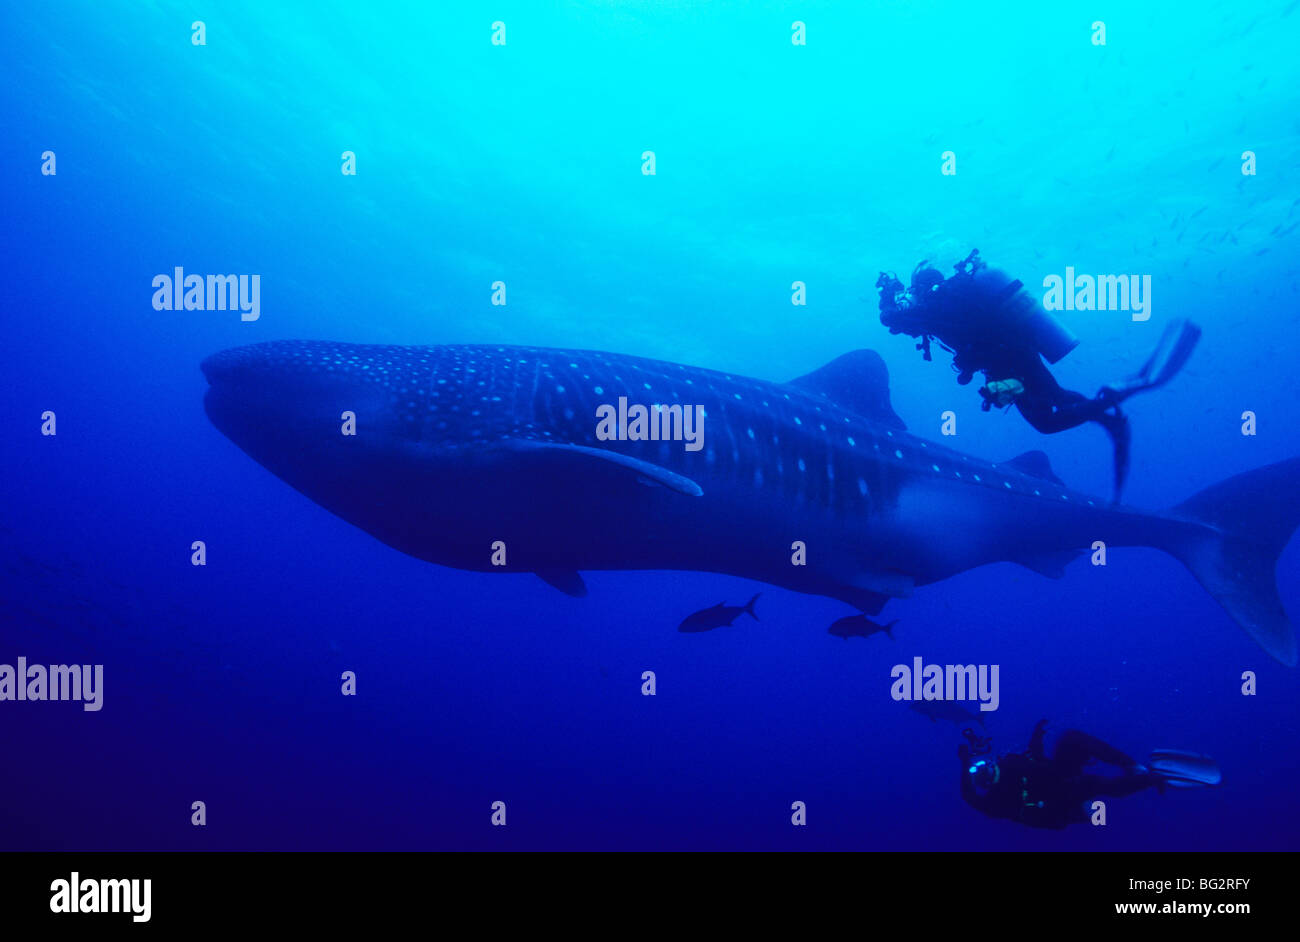 Requin-baleine, Fonds sous-marins au large de l'île de Darwin. Galapagos. L'Équateur. Rhiniodon typus. Tourisme plongée. La plongée sous-marine. Poissons de l'océan. Banque D'Images